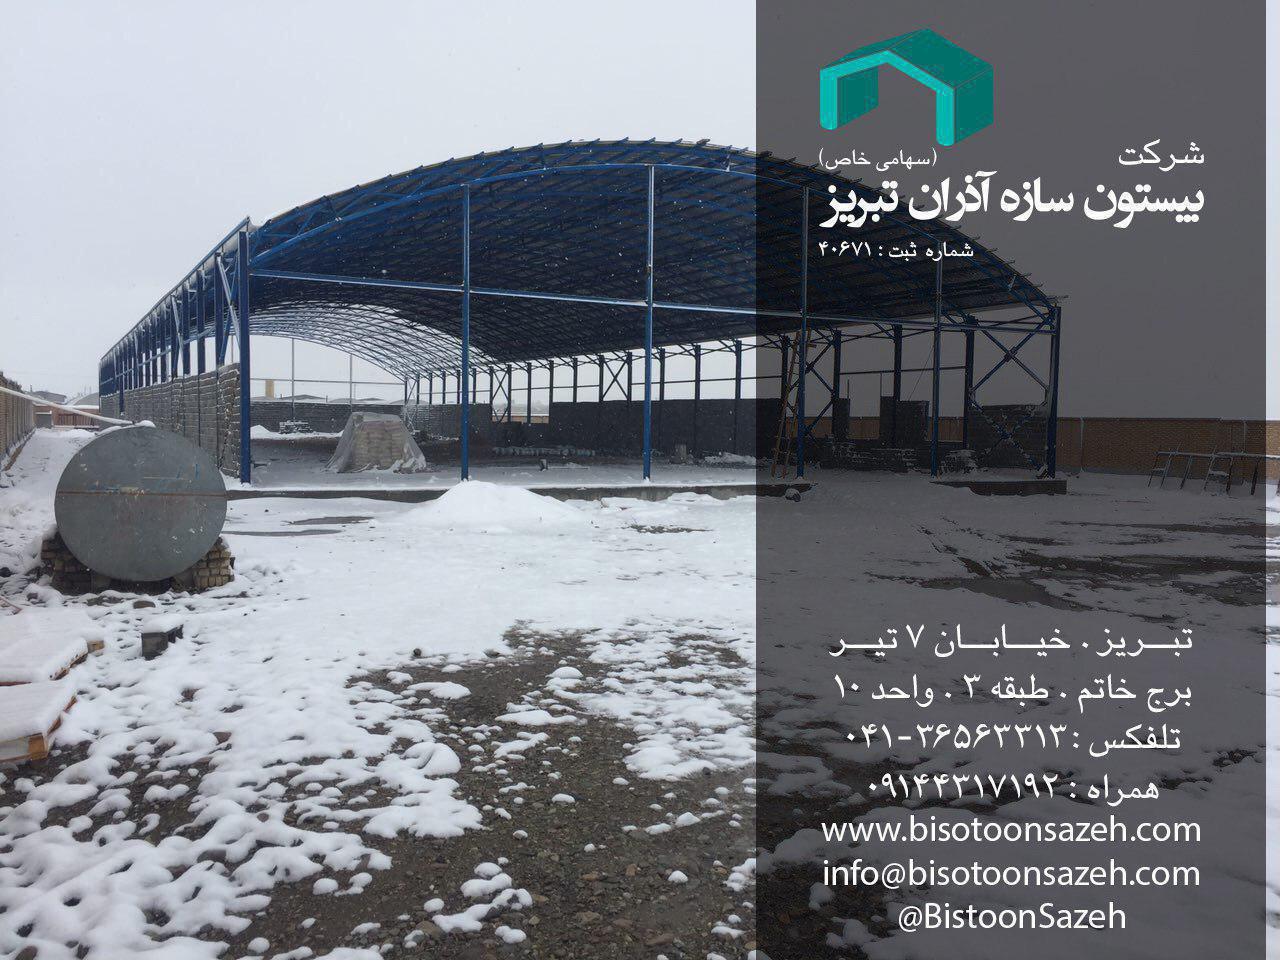 پروژه سوله سبک برای تالار در پاکدشت شریف آباد